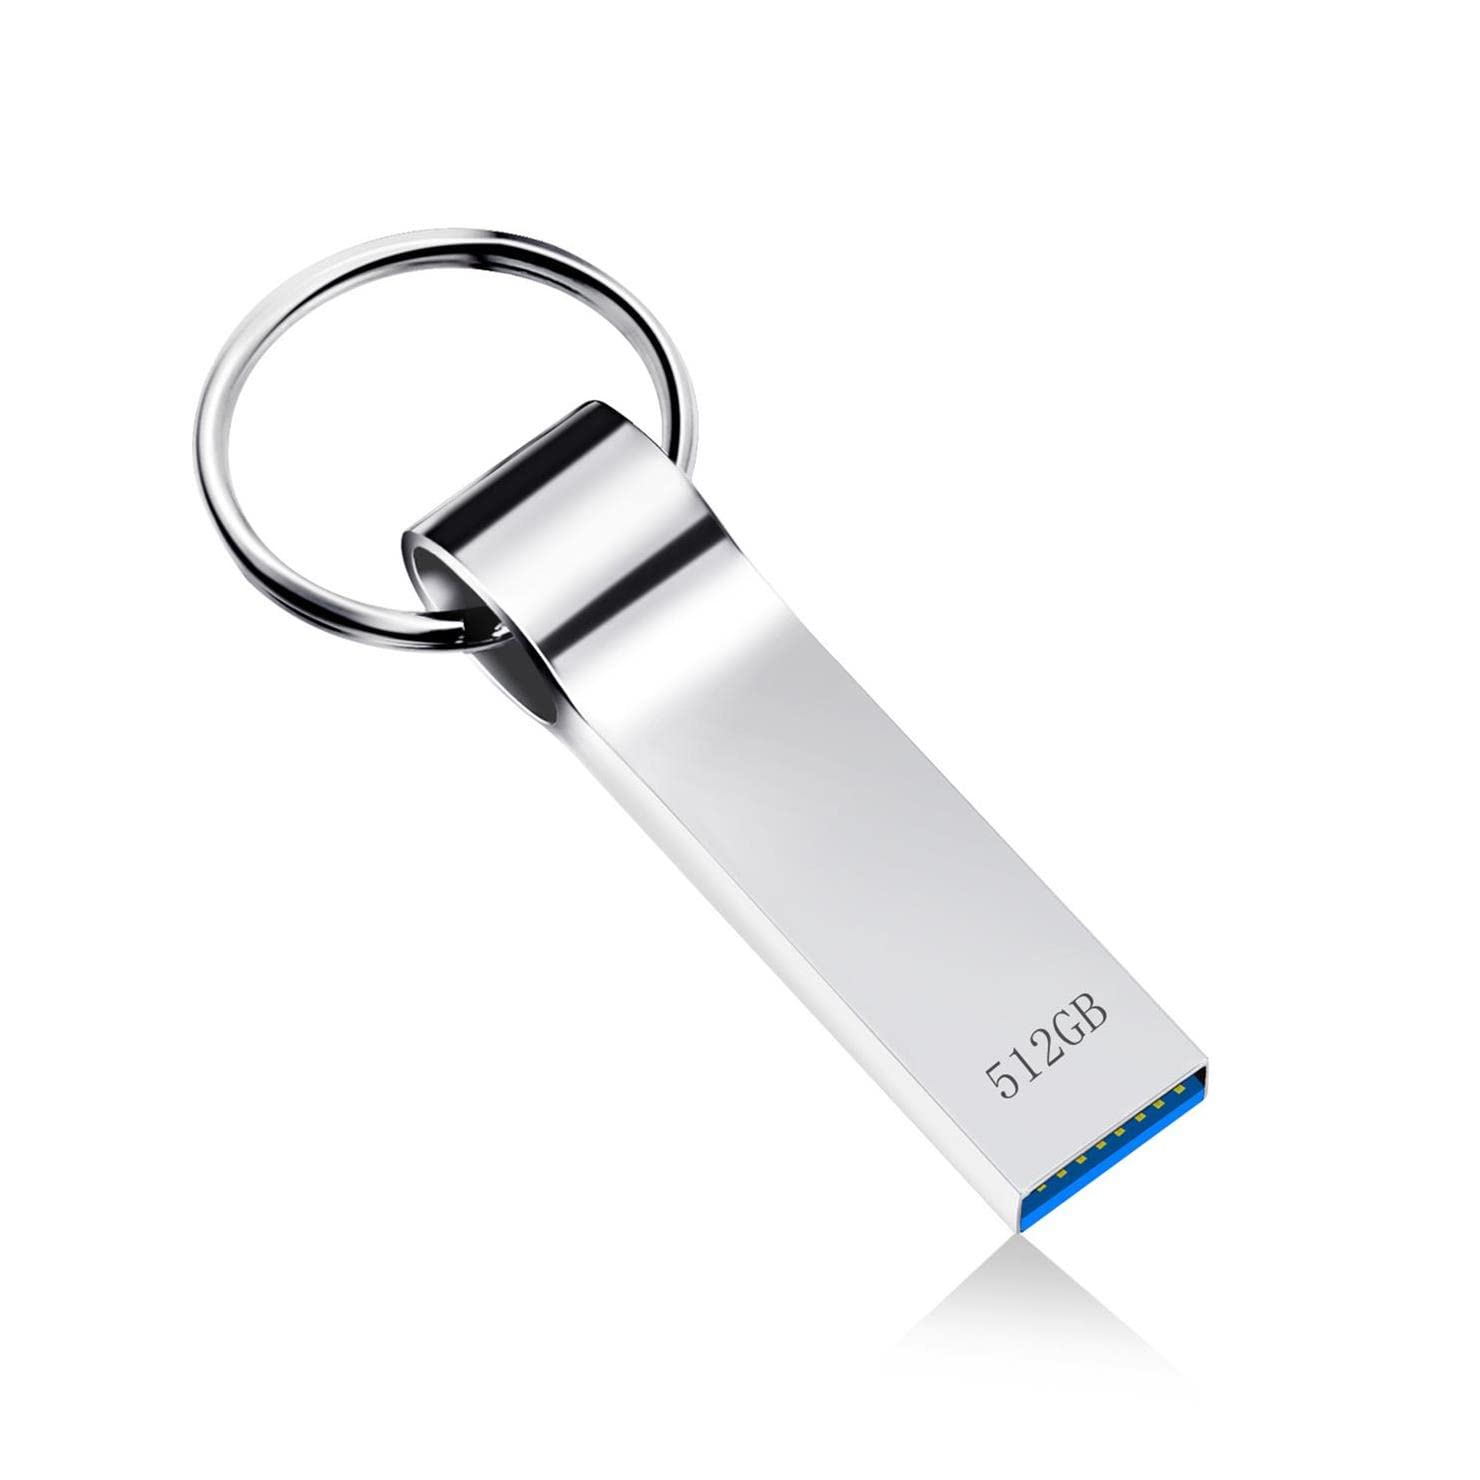 LIFUNMY 512GB USB Flash Drive Memory Stick High Speed USB 3.0 Thumb Drive Waterproof USB Drive Metall Pen Drive USB Stick External Data Storage for Computer (512gb)